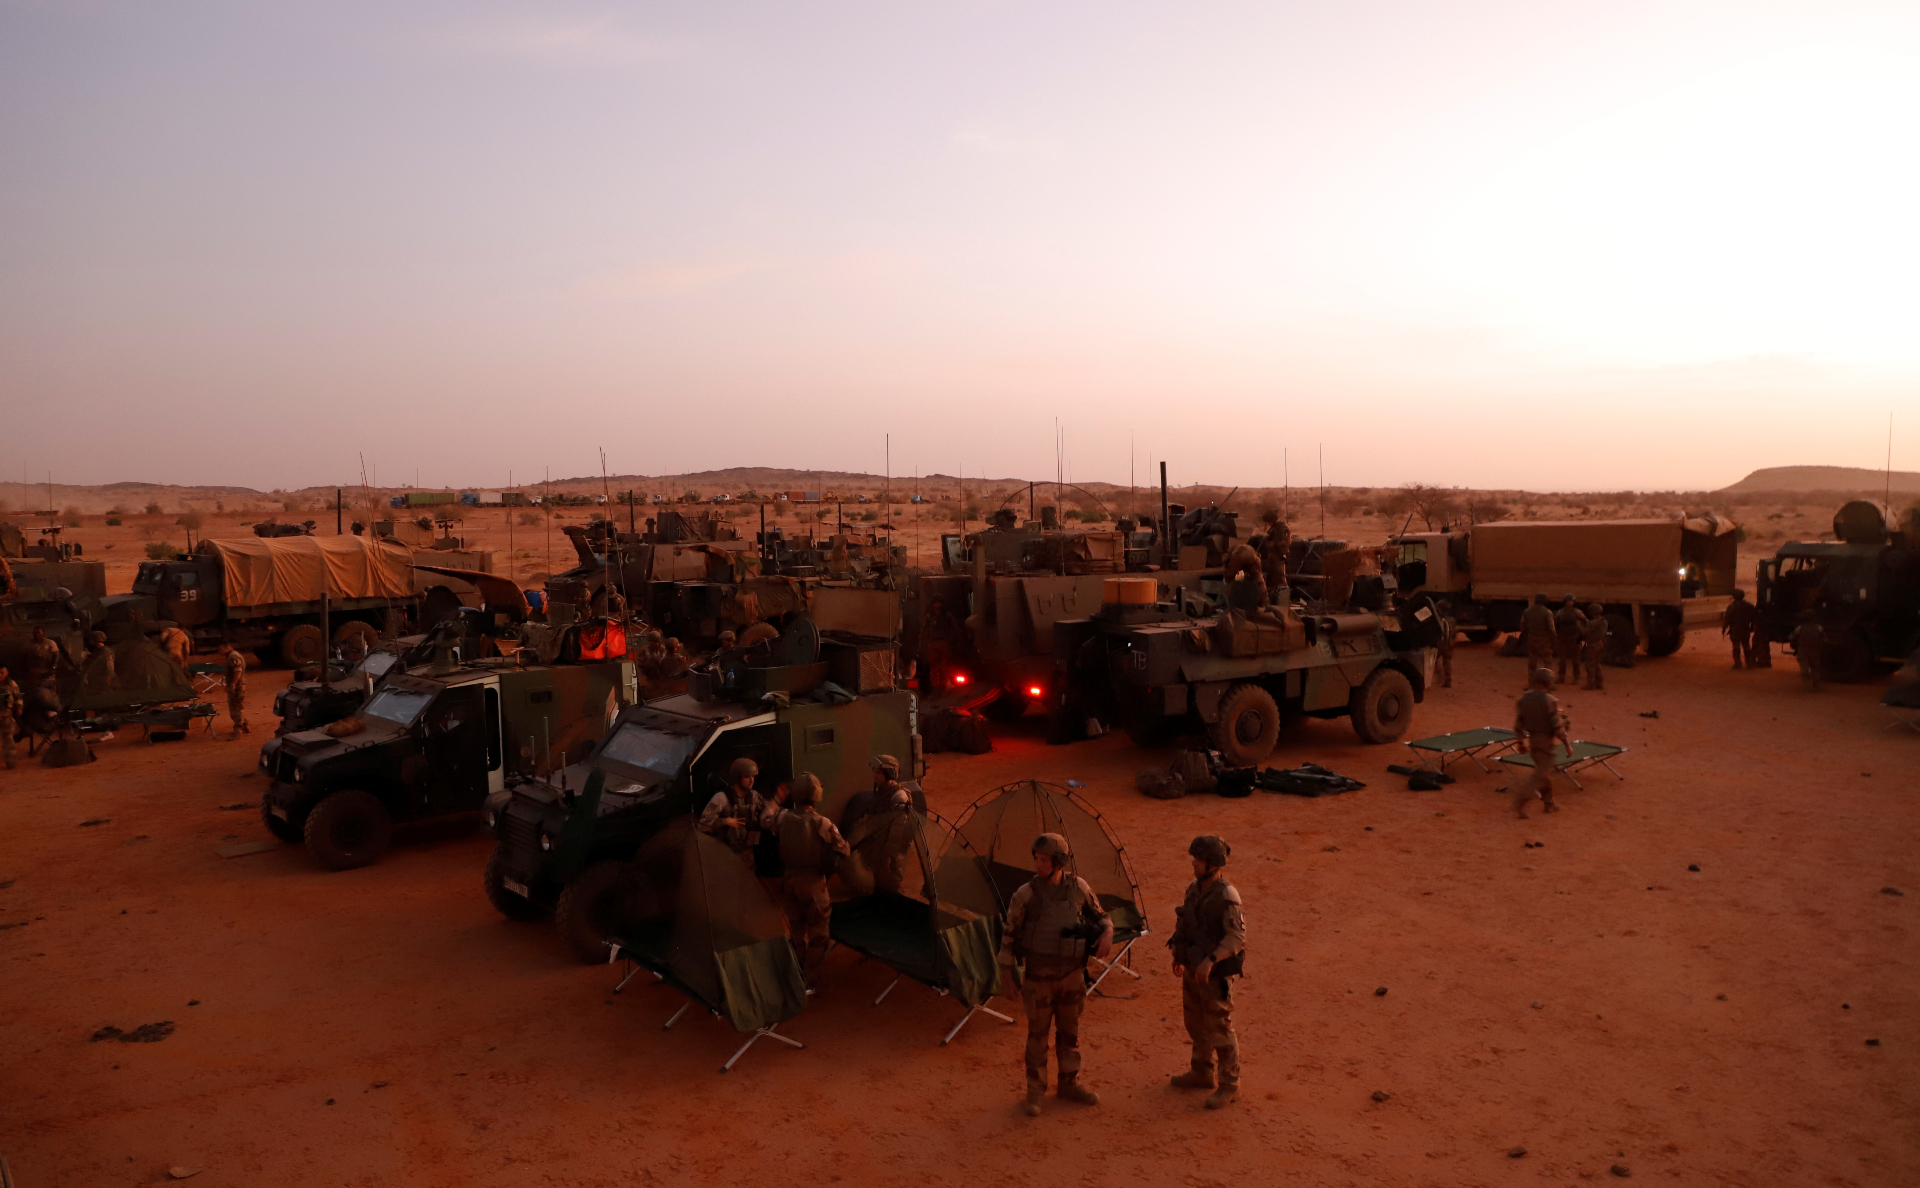 Власти Мали объявили о разрыве оборонного соглашения с Францией"/>













